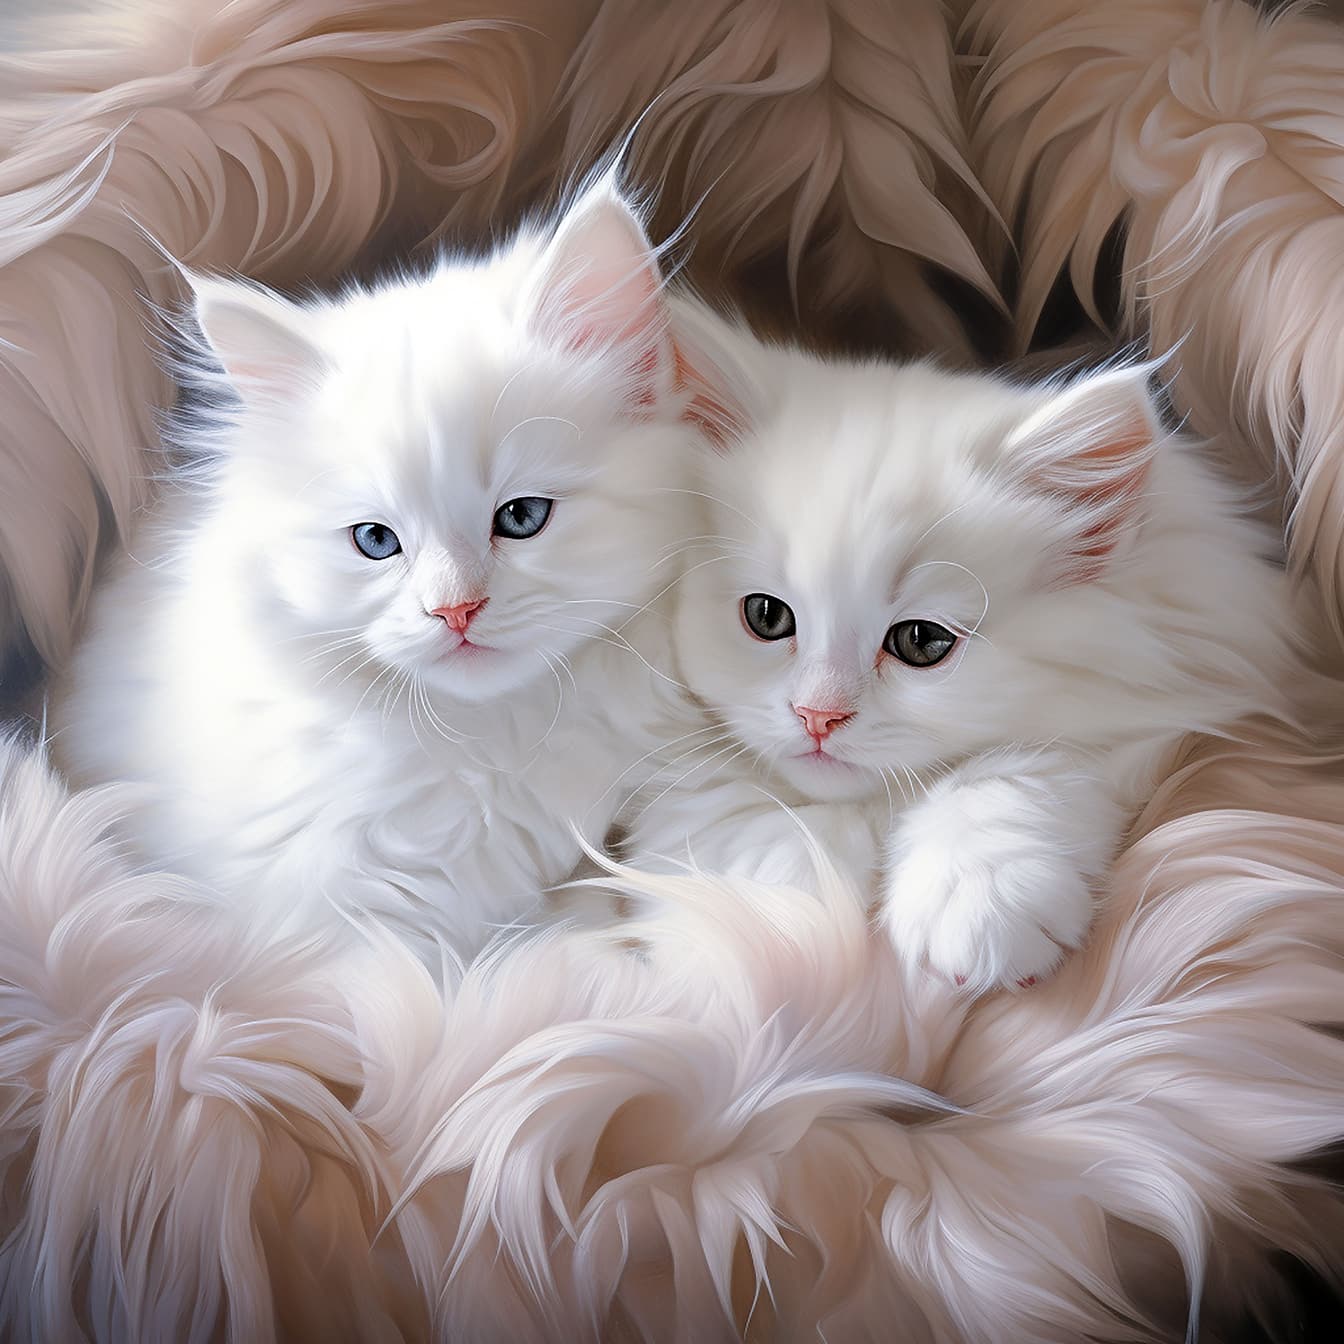 Ρεαλιστική απεικόνιση των αξιολάτρευτων λευκών γούνινων γατών